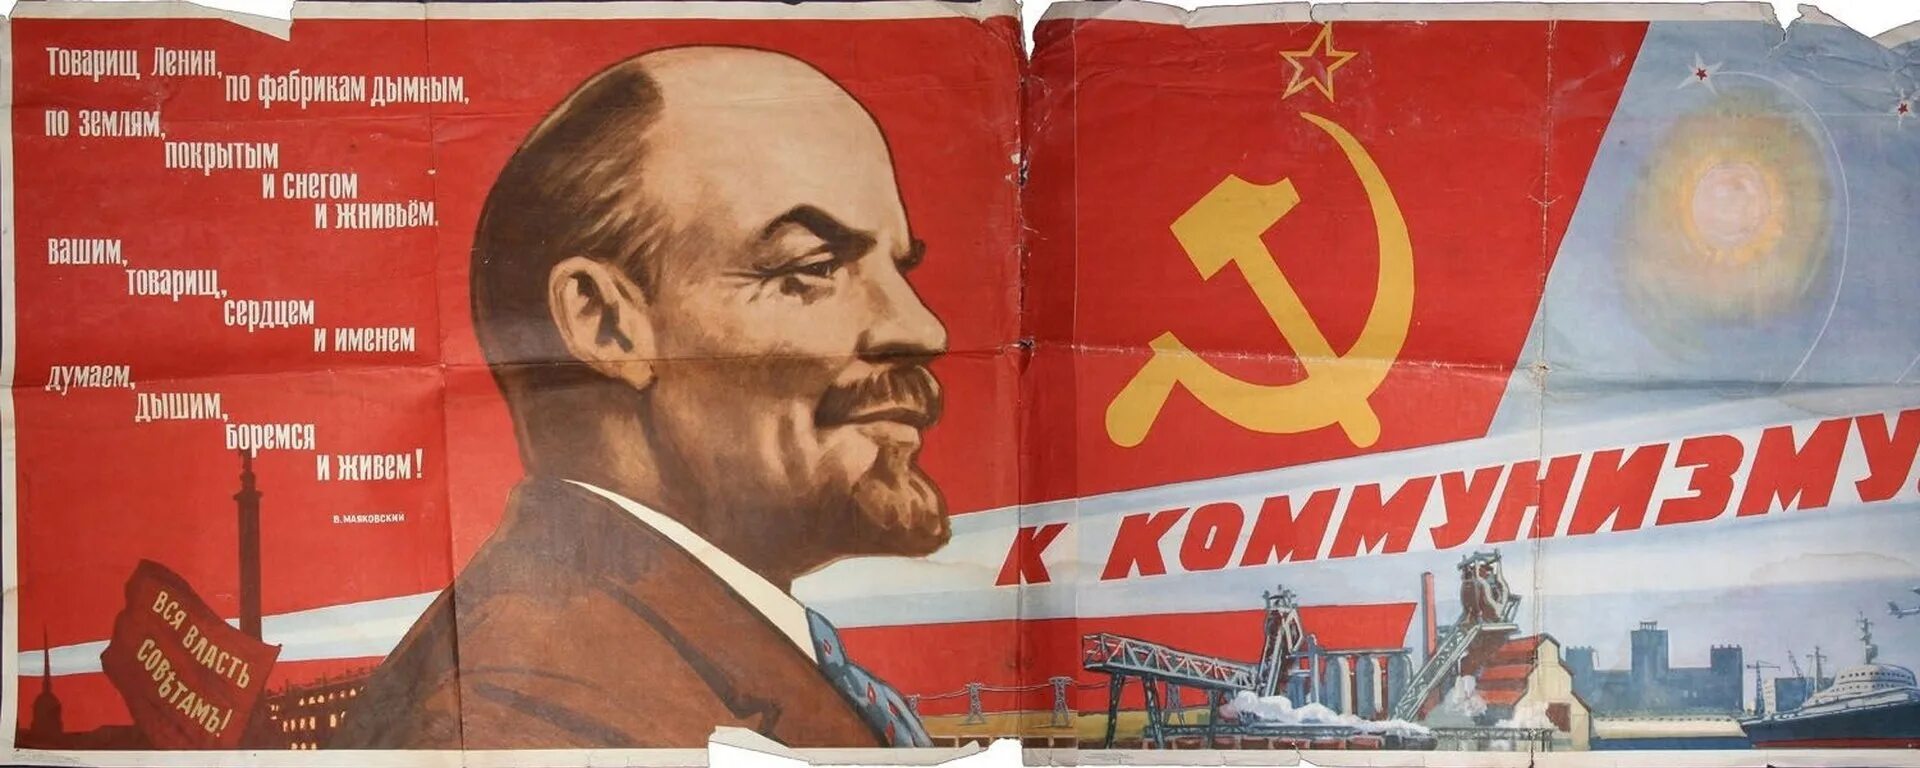 Политический лозунг ленина. Коммунистические плакаты. Коммунизм плакаты. Лозунг коммунизма. Ленин плакат.